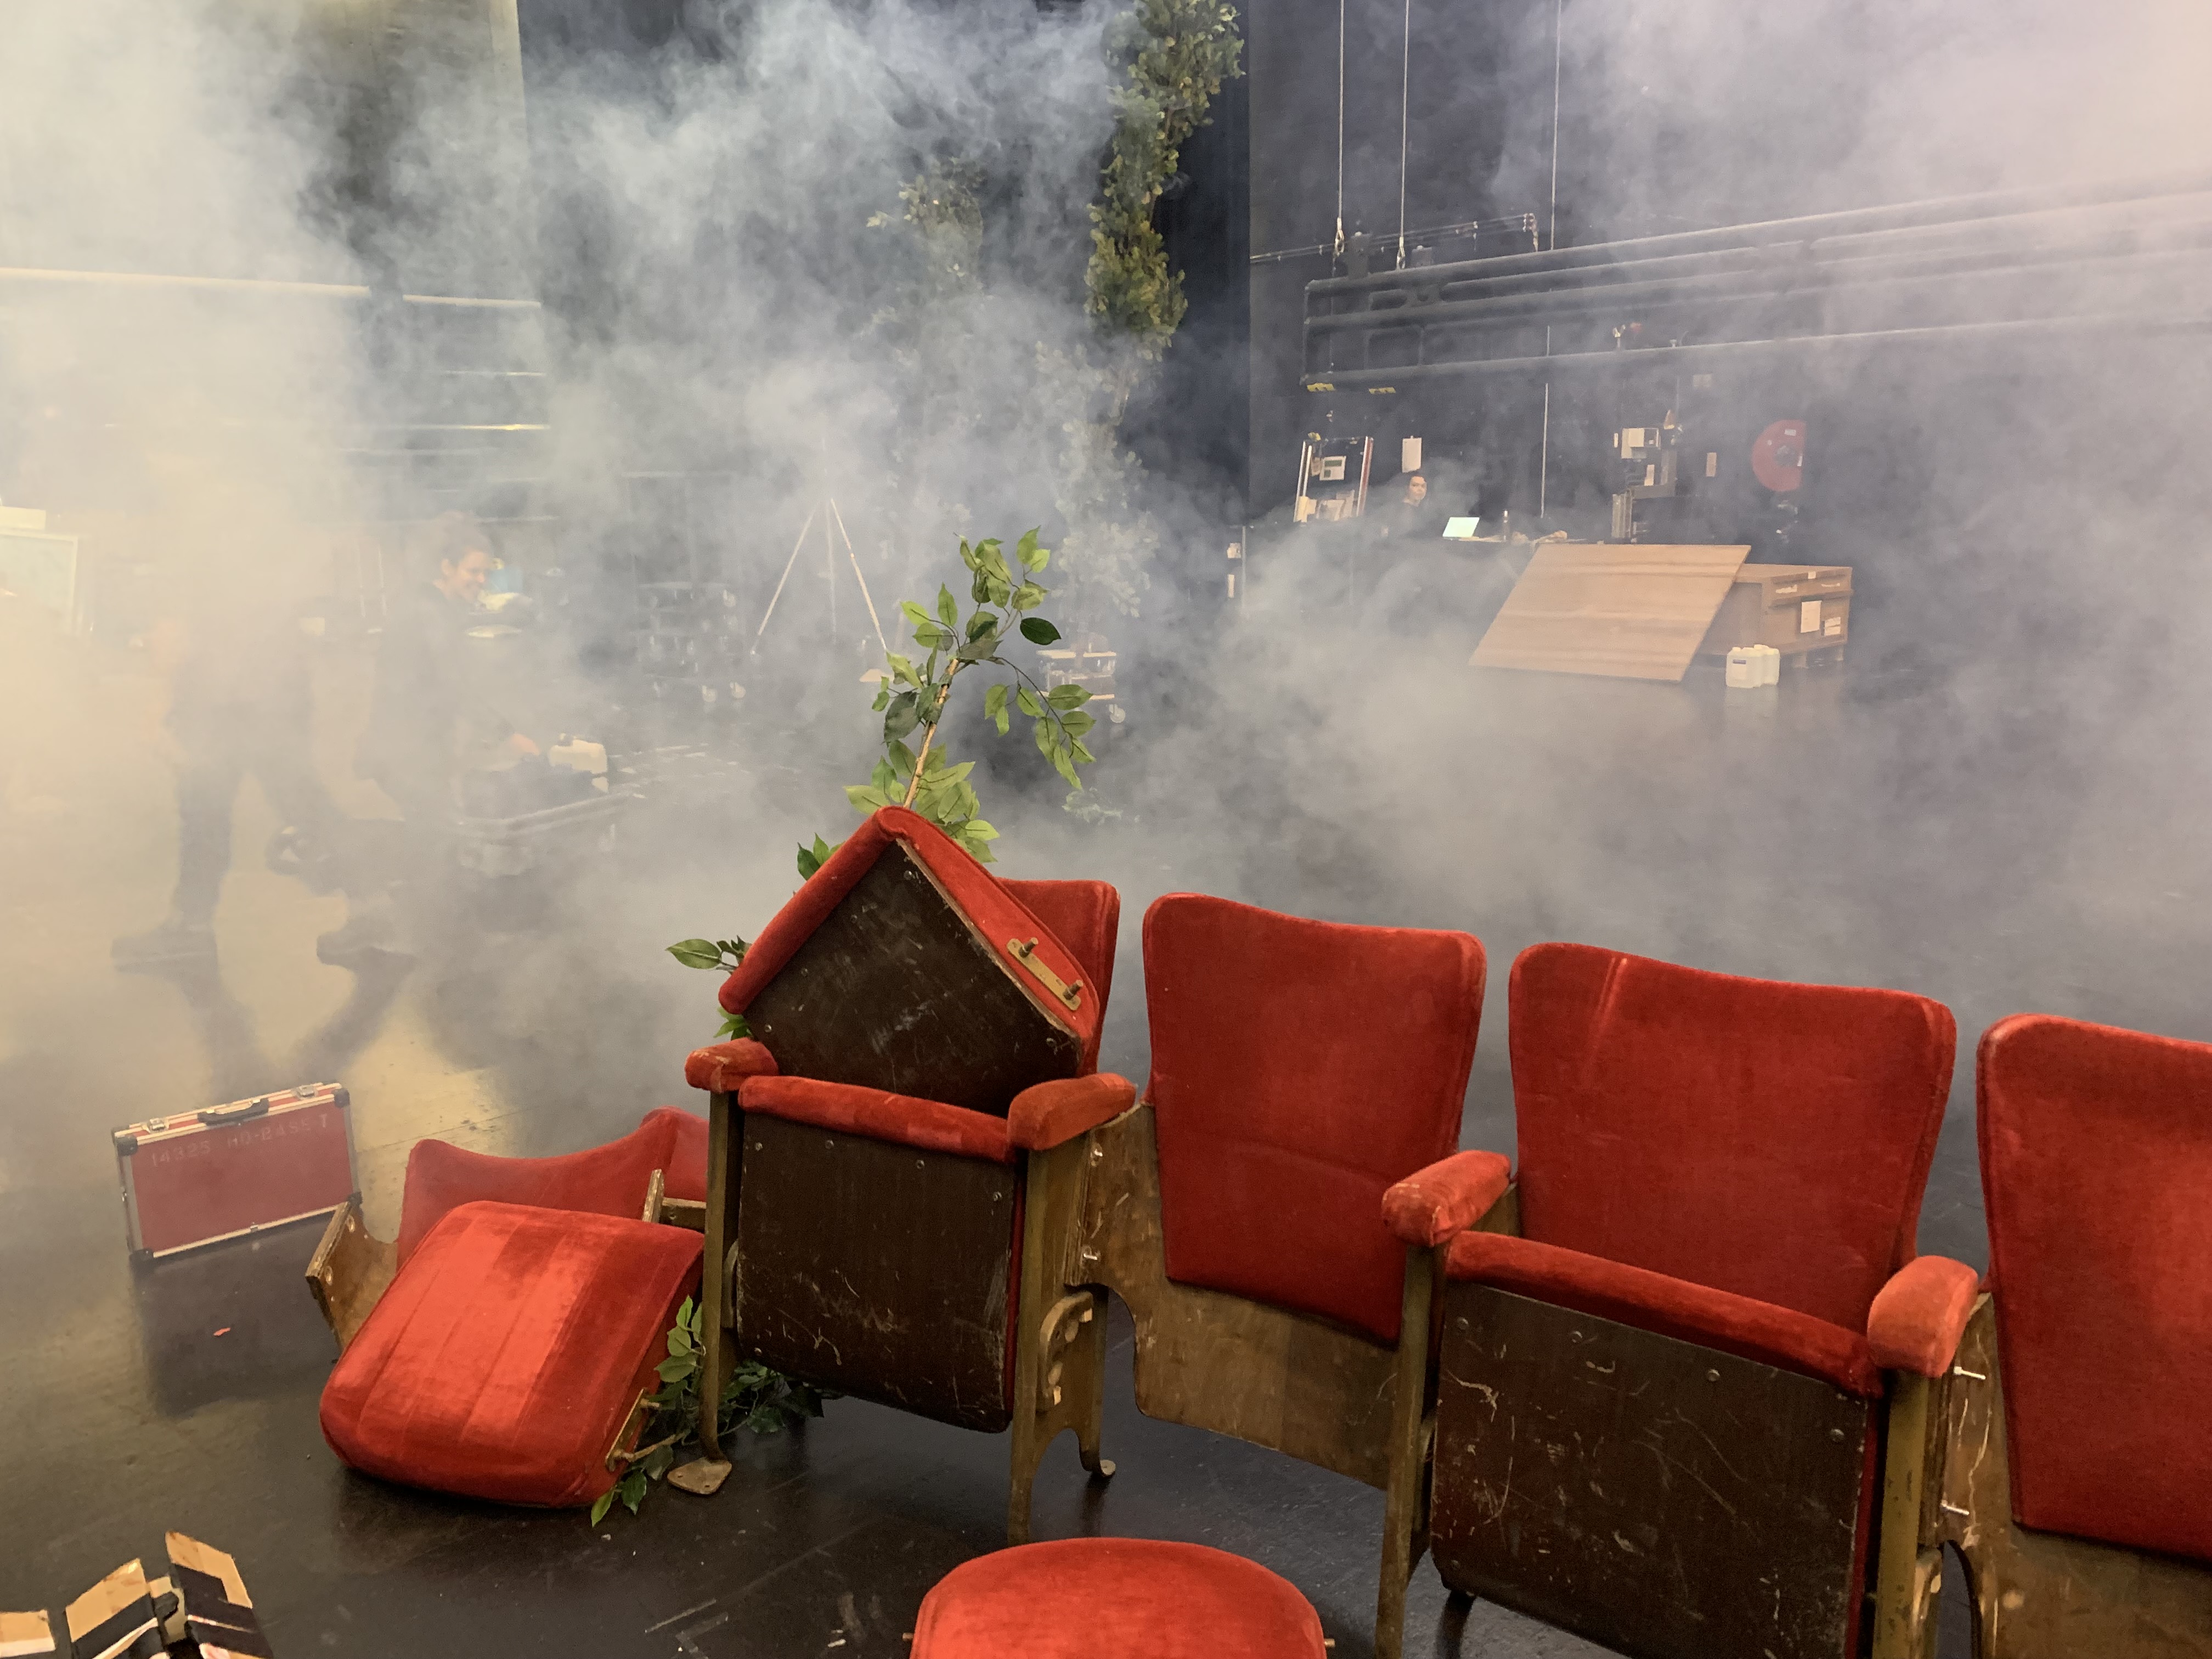 theaterstoelen in rook